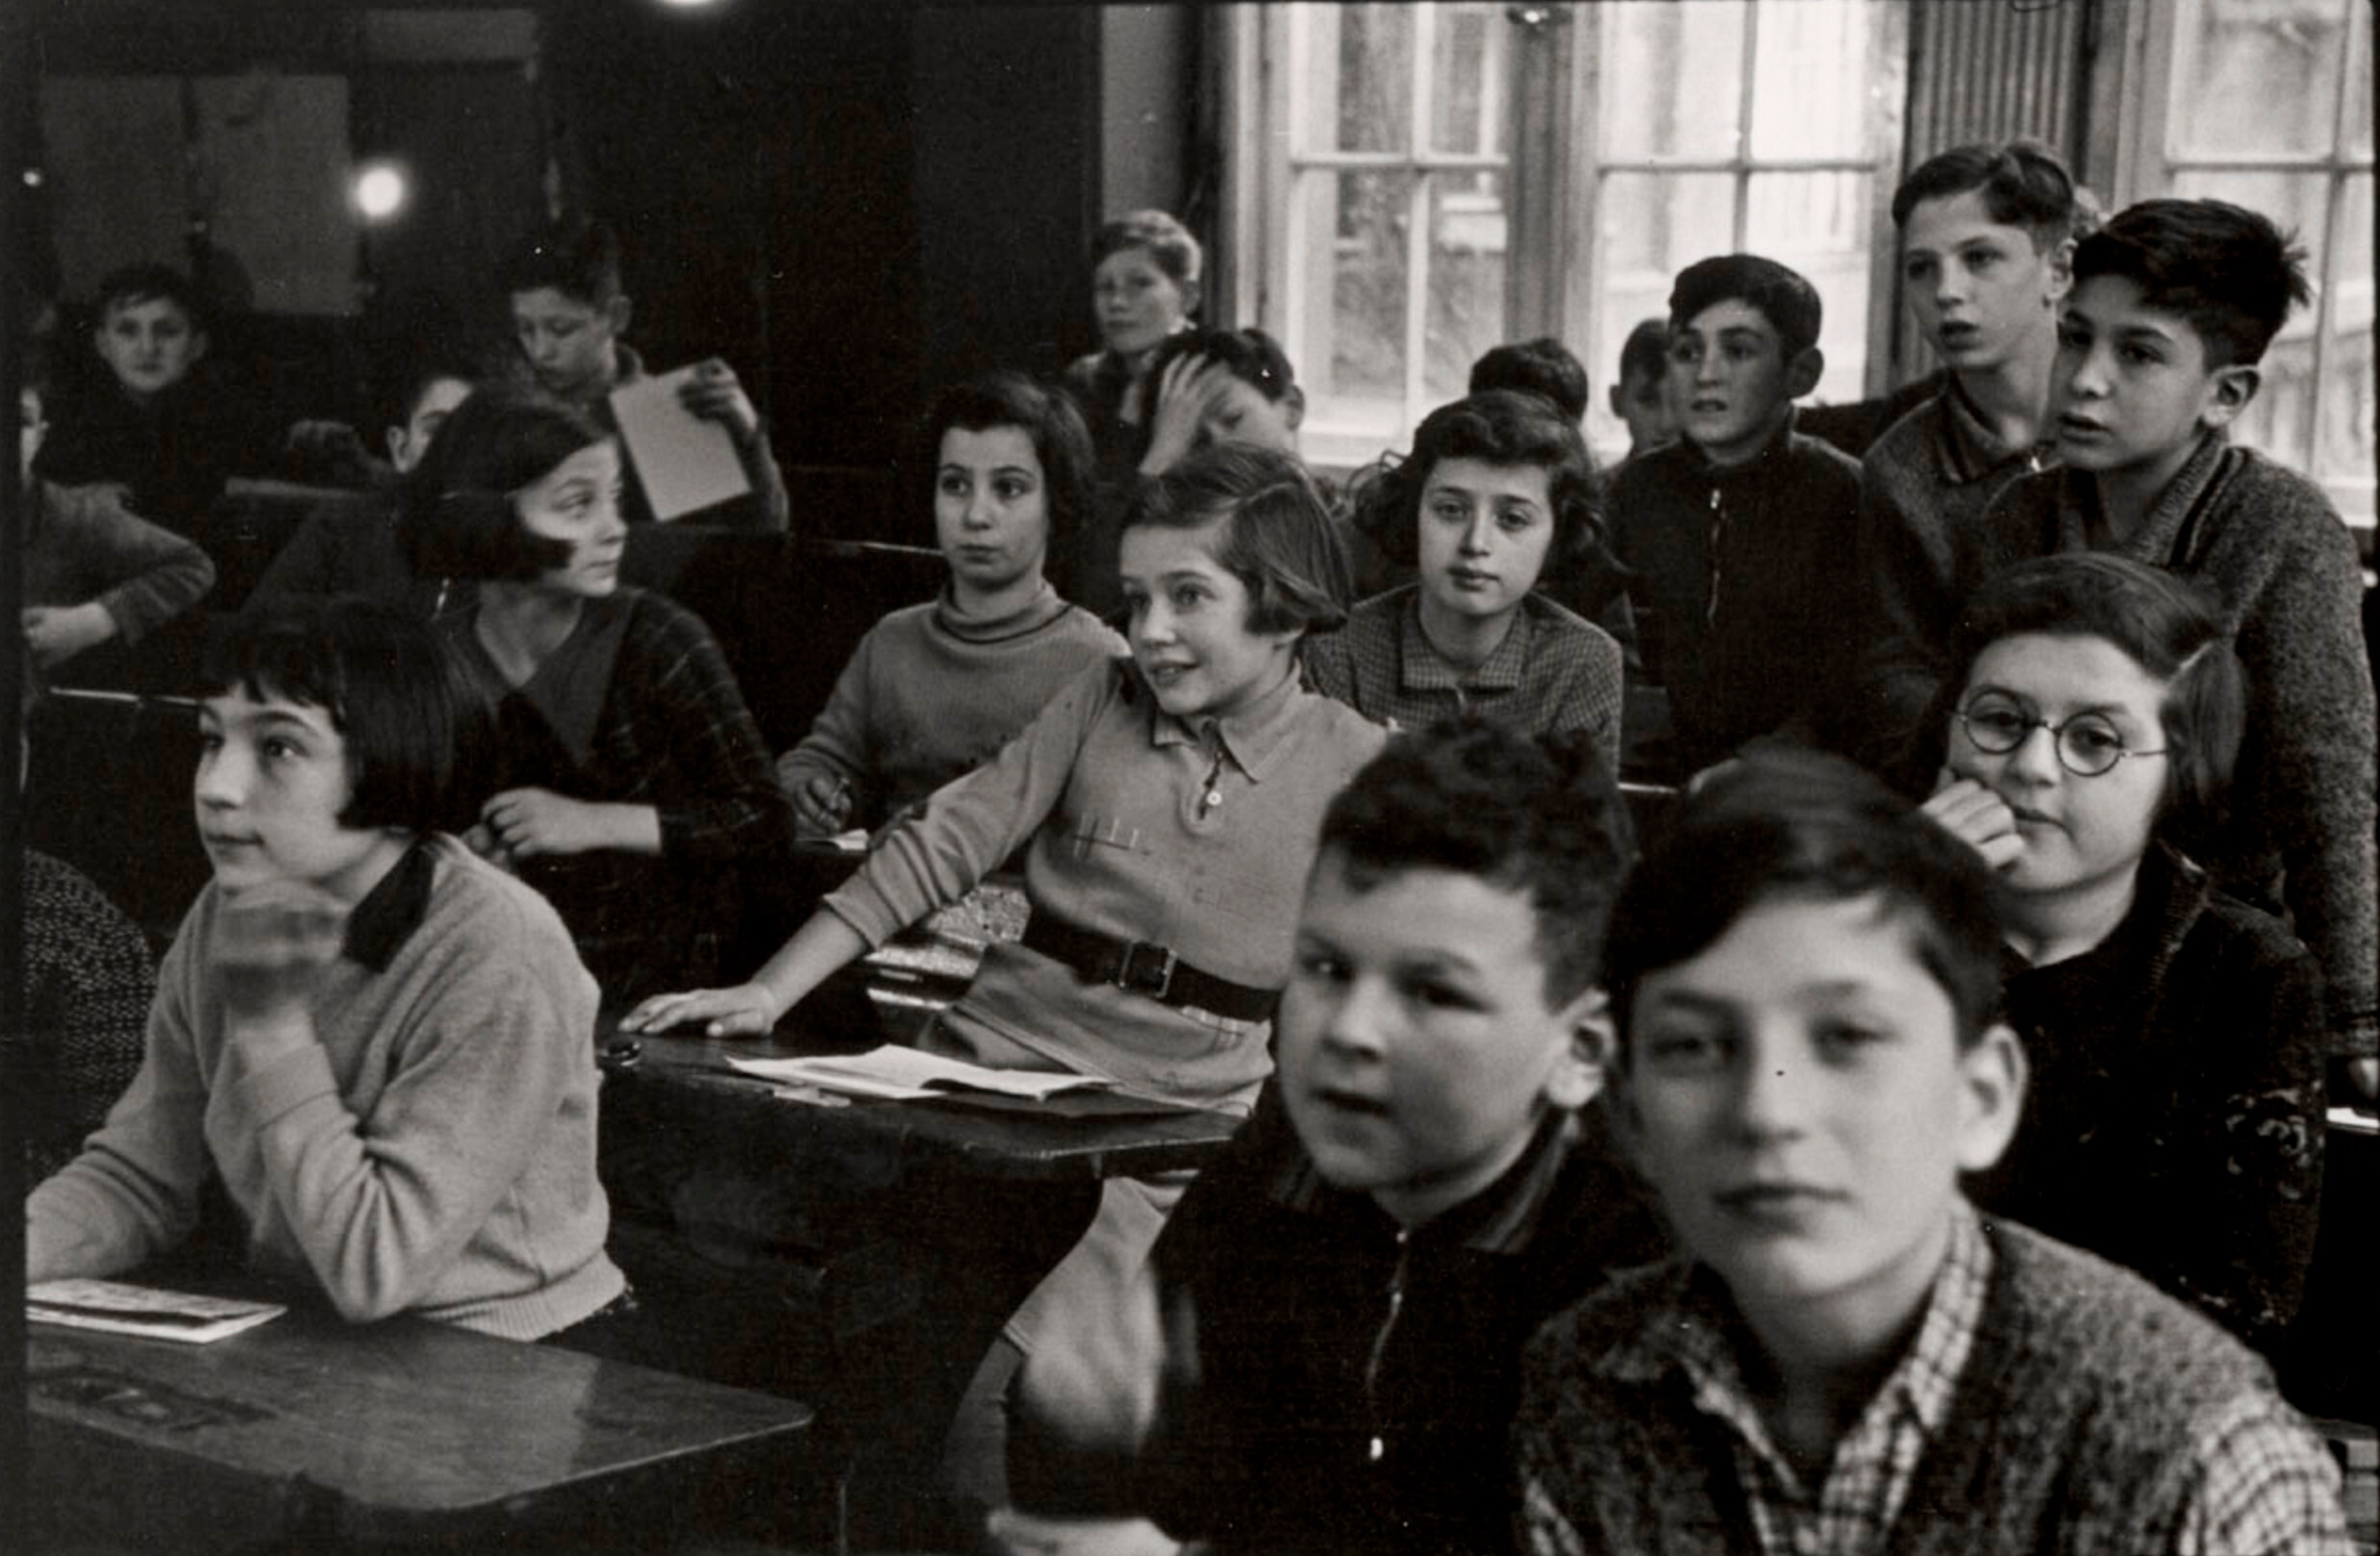 Jüdische Oberschule (еврейская средняя школа) в классе Jüdische Gemeinde (еврейской общины), Гроссе Гамбургерштрассе, Берлин, ок. 1936 г. Фотограф Роман Вишняк